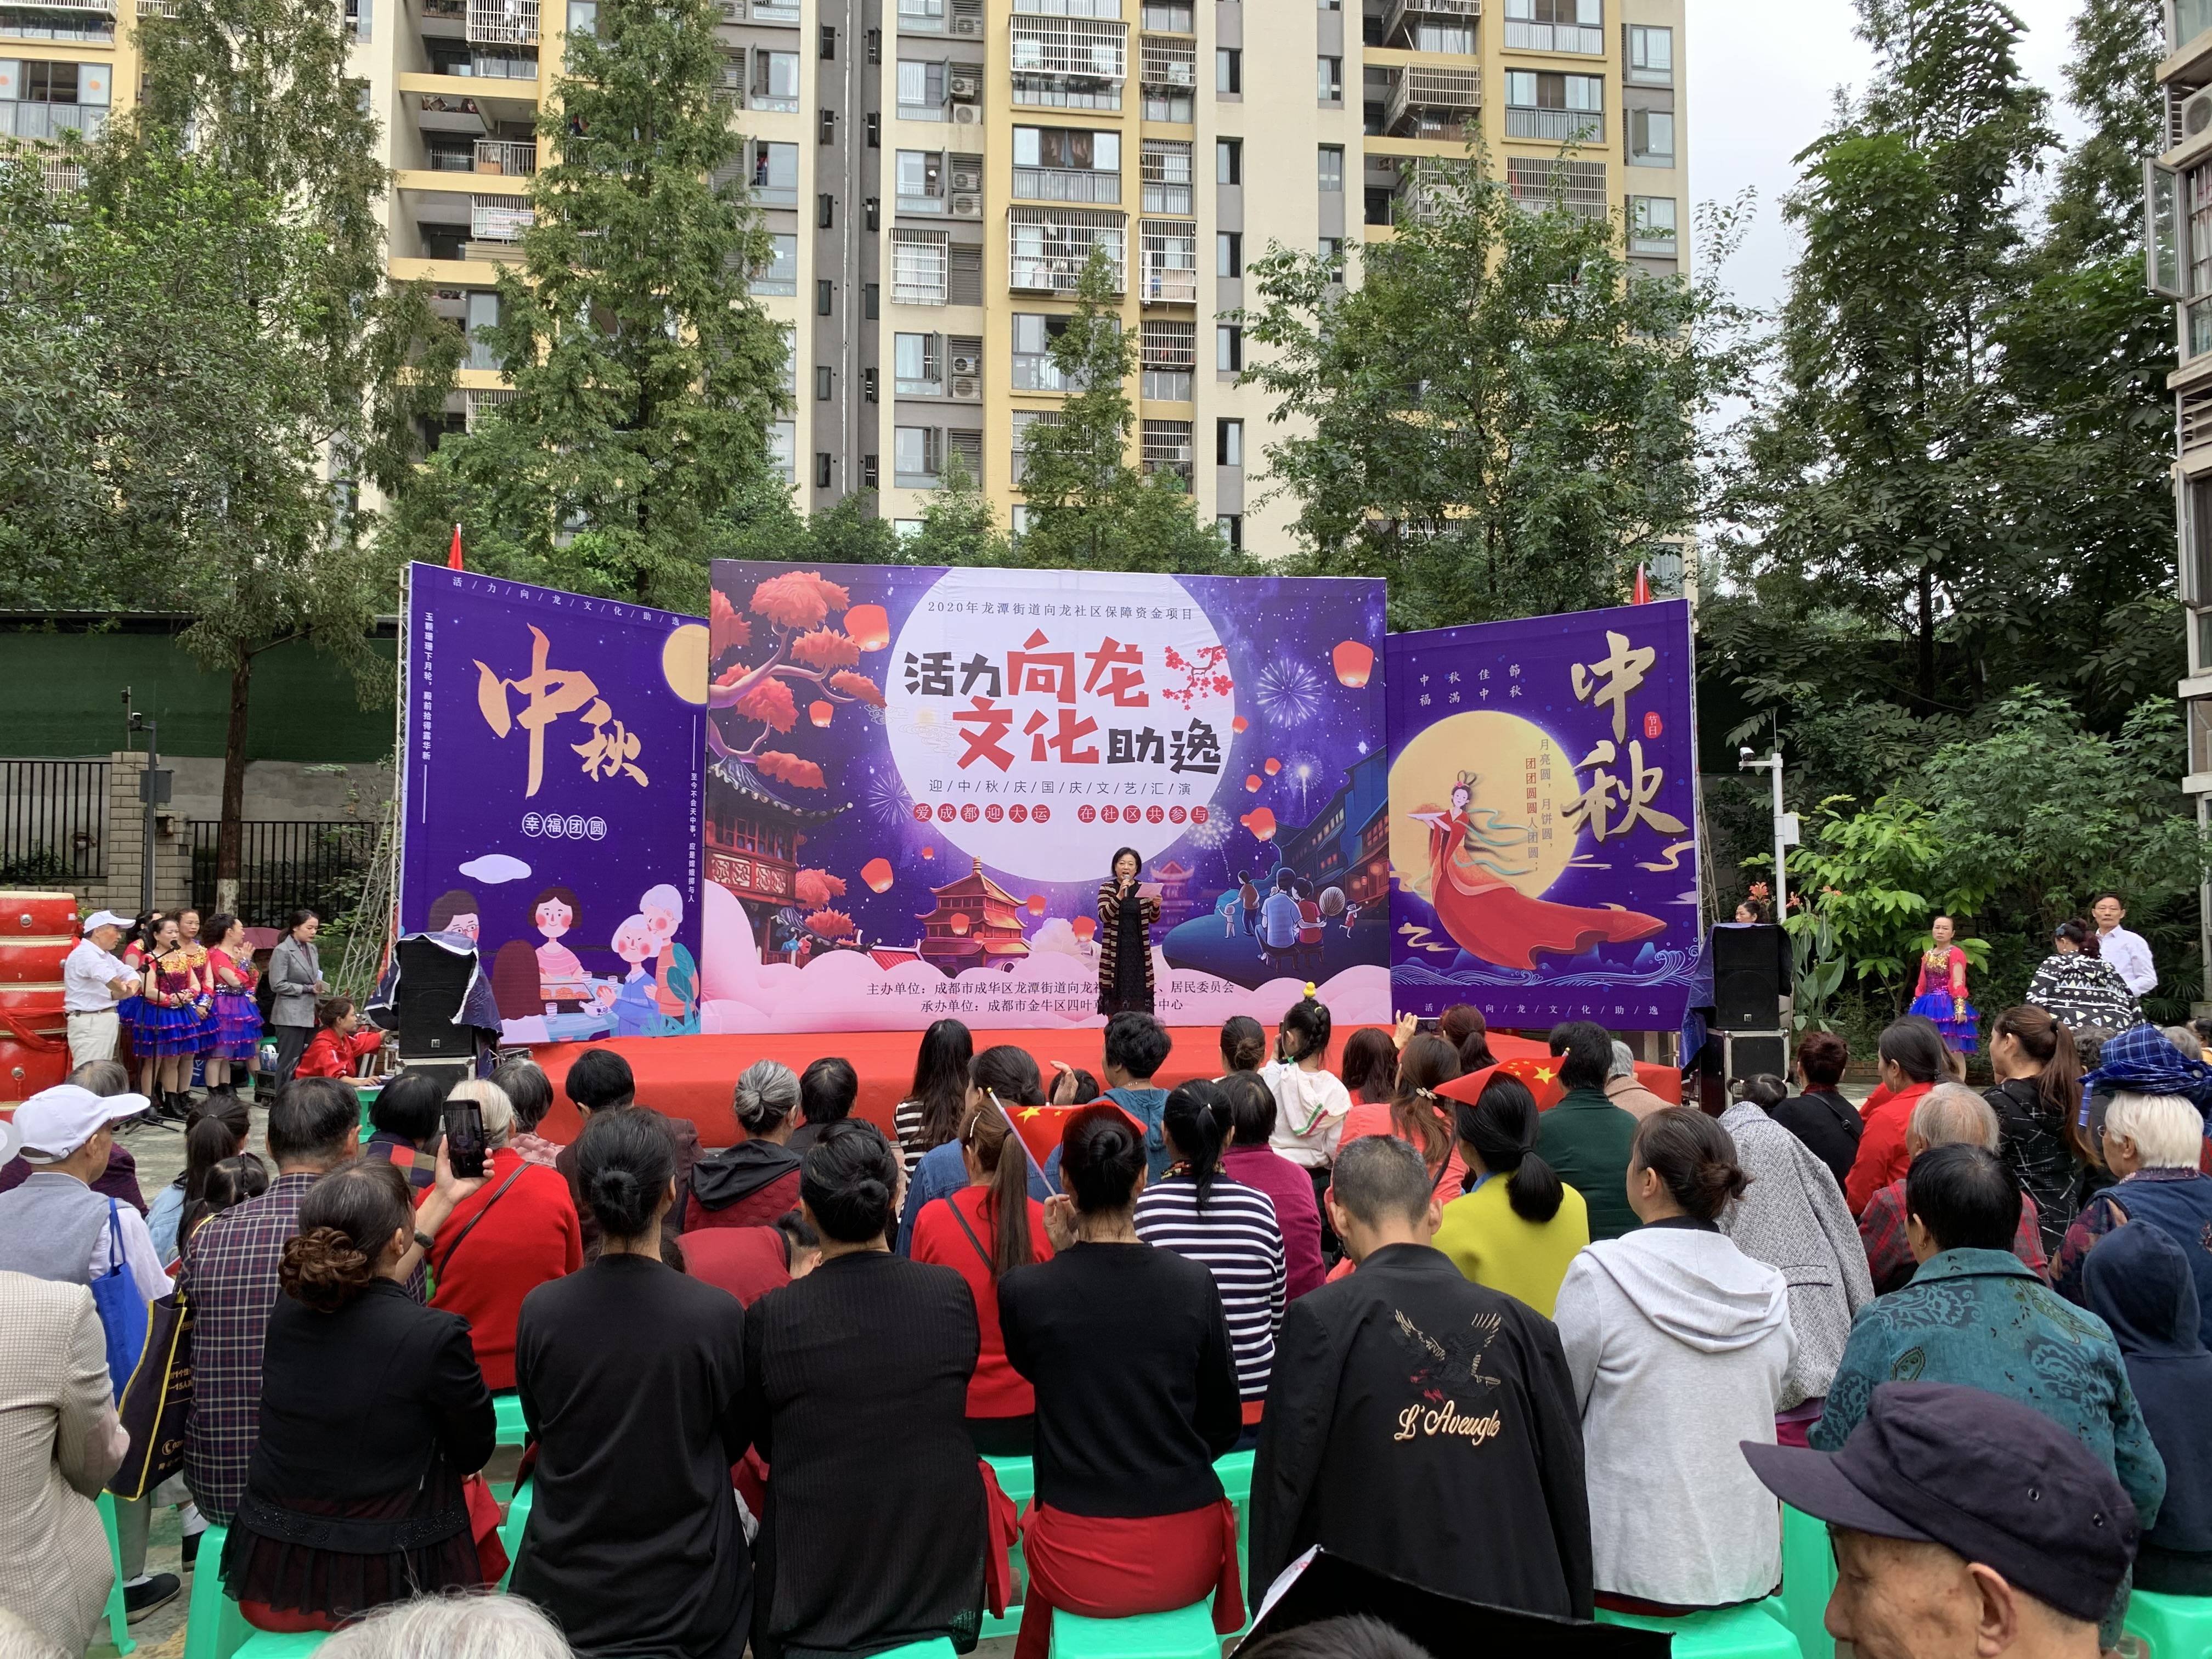 为了迎接祖国71周年华诞及传统节日中秋节的到来,加强向龙社区文化